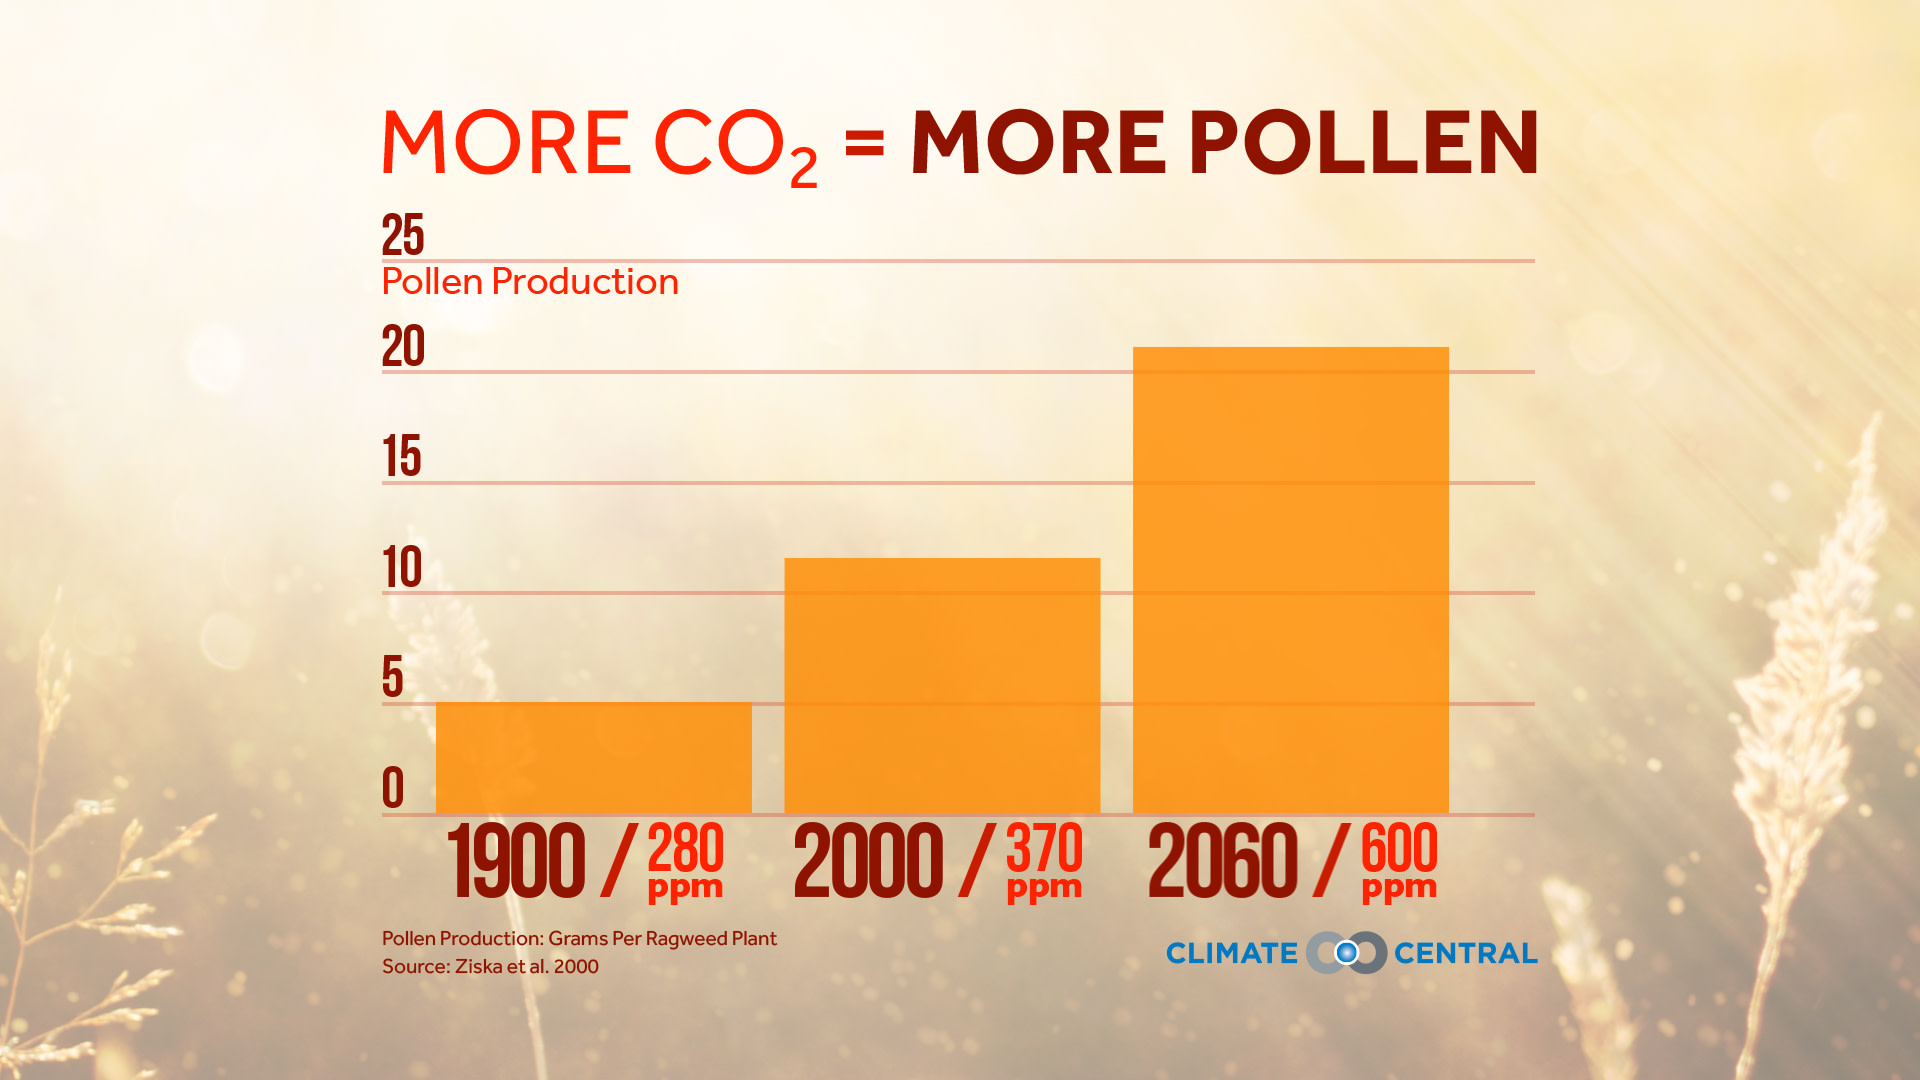 Set 1 - More CO2 = More Pollen